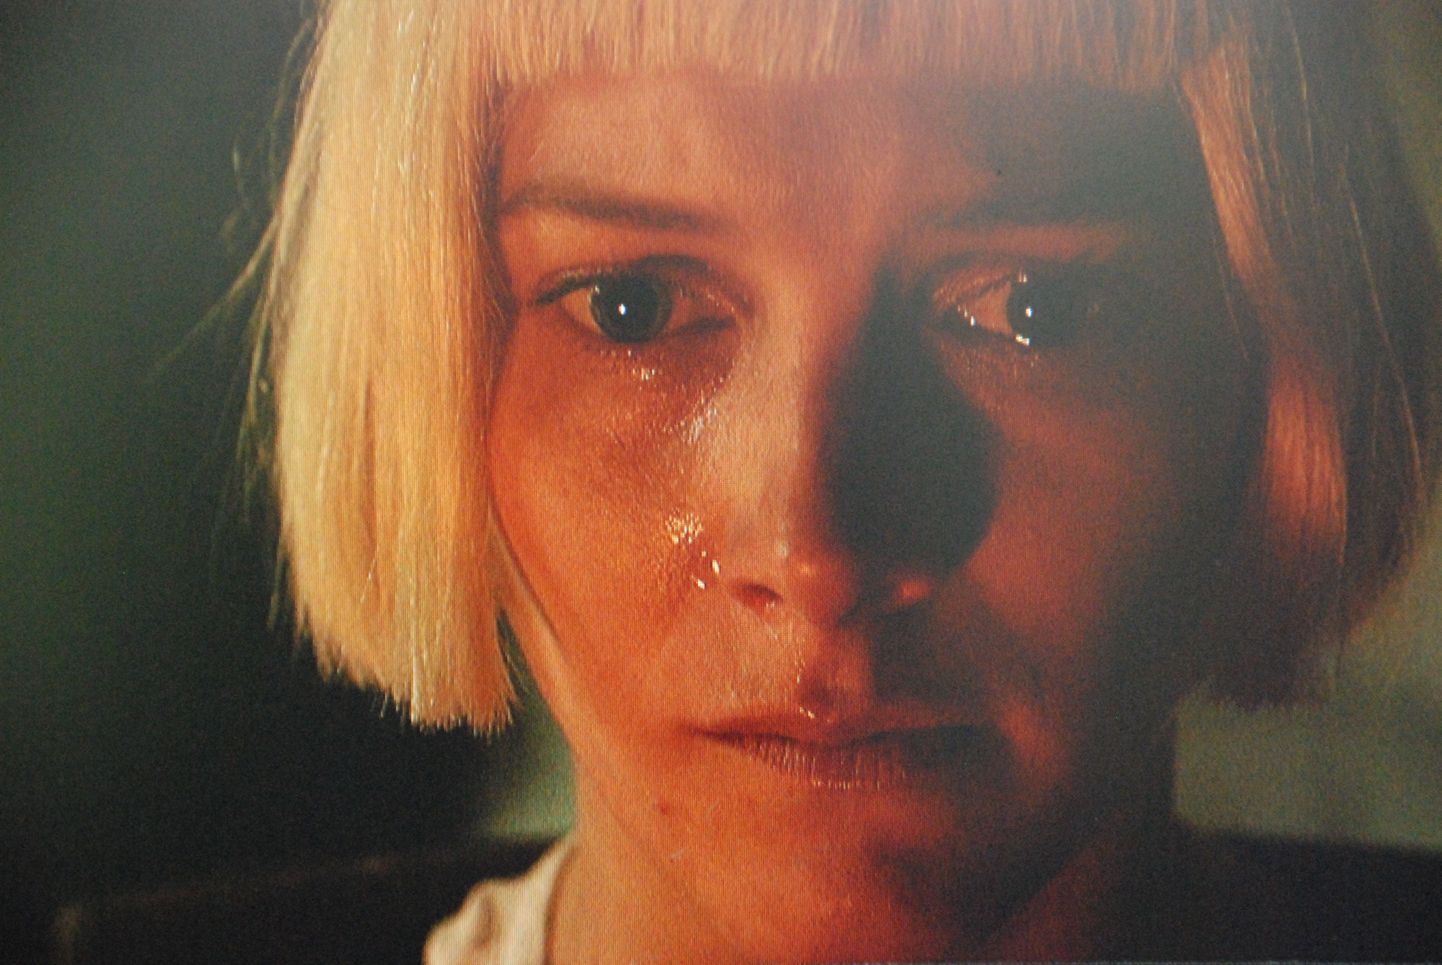 Алийде (Лаура Бирн) совершает предательство со слезами на глазах. Фото иллюстративное